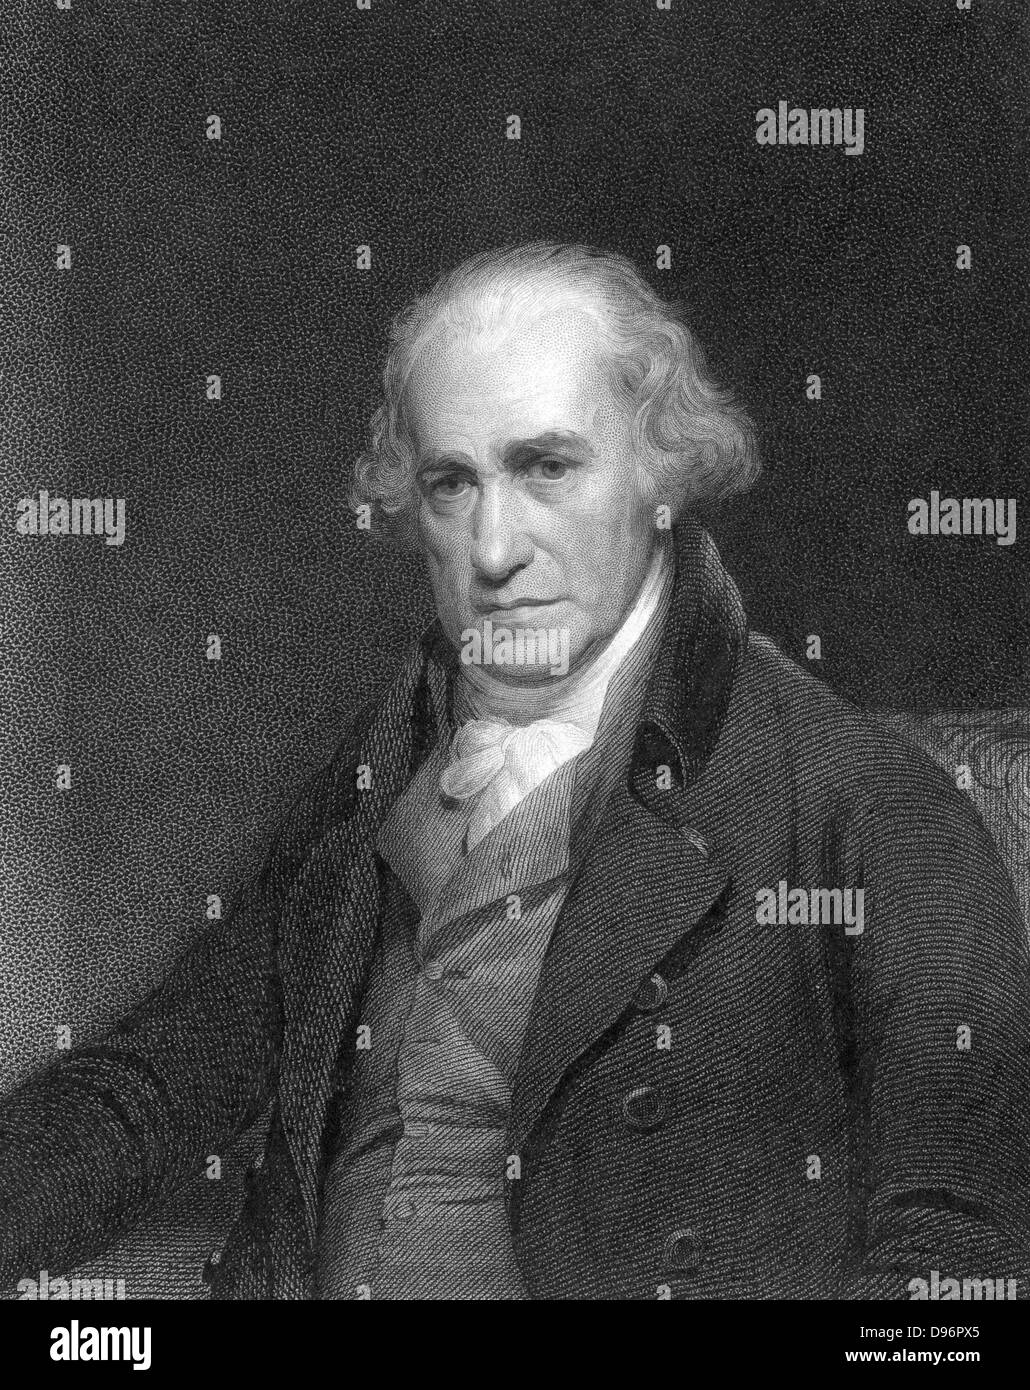 James Watt, Schottischer Ingenieur und Erfinder. Watt (1736-1819) machte große Verbesserungen in der Dampfmaschine, einer der bedeutendsten in der separaten Kondensator. 1774 ging er in Partnerschaft mit Matthew Boulton (1728-1809) der Birmingham Hersteller und Unternehmer. Von "die Galerie der porträts', London, 1833. Gravur. Stockfoto